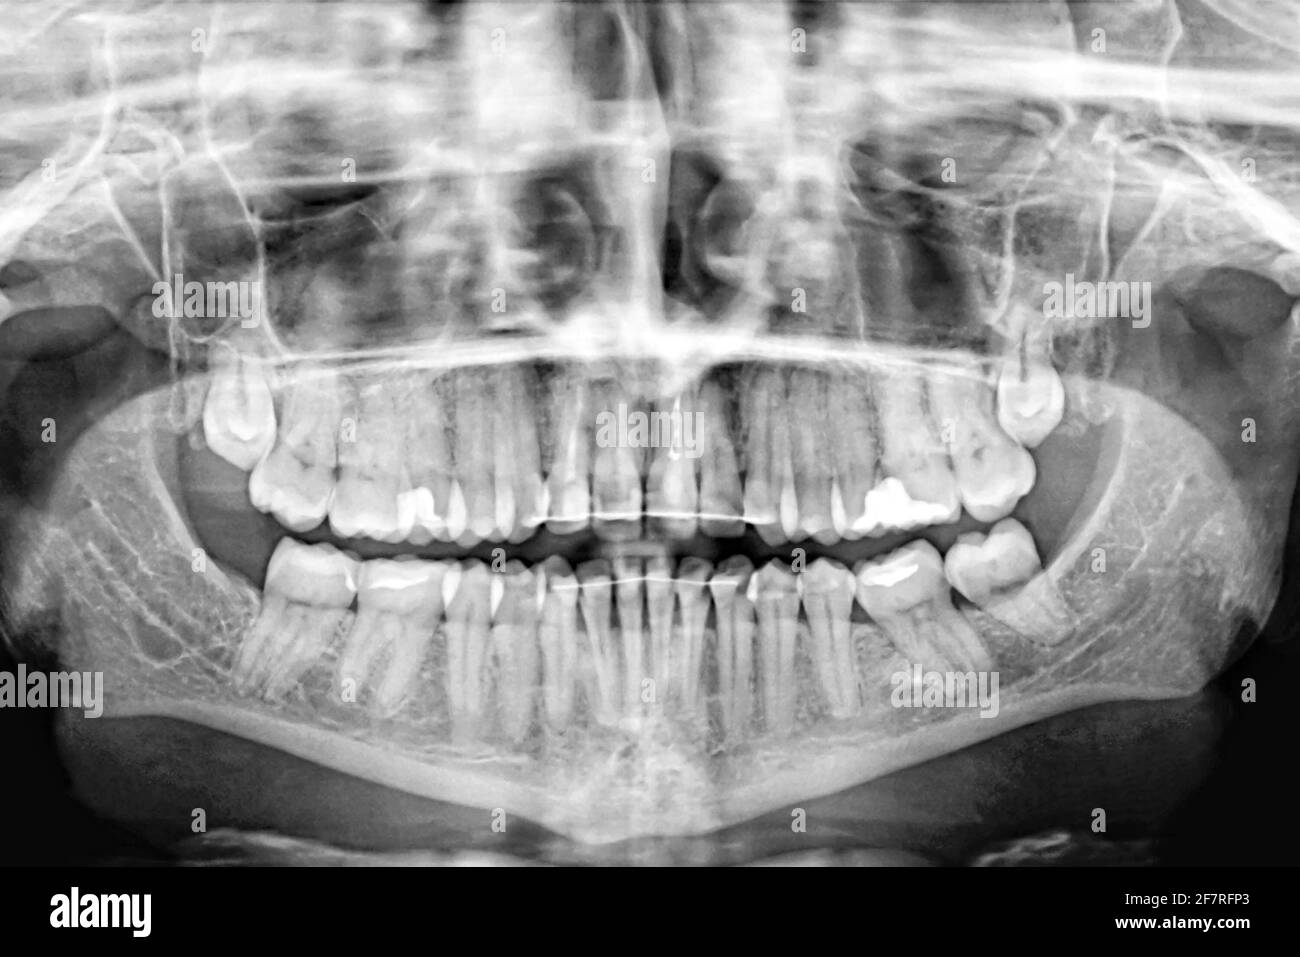 Examen et traitement des dents de l'homme par radiographie panoramique. Soins dentaires.bannière. Banque D'Images